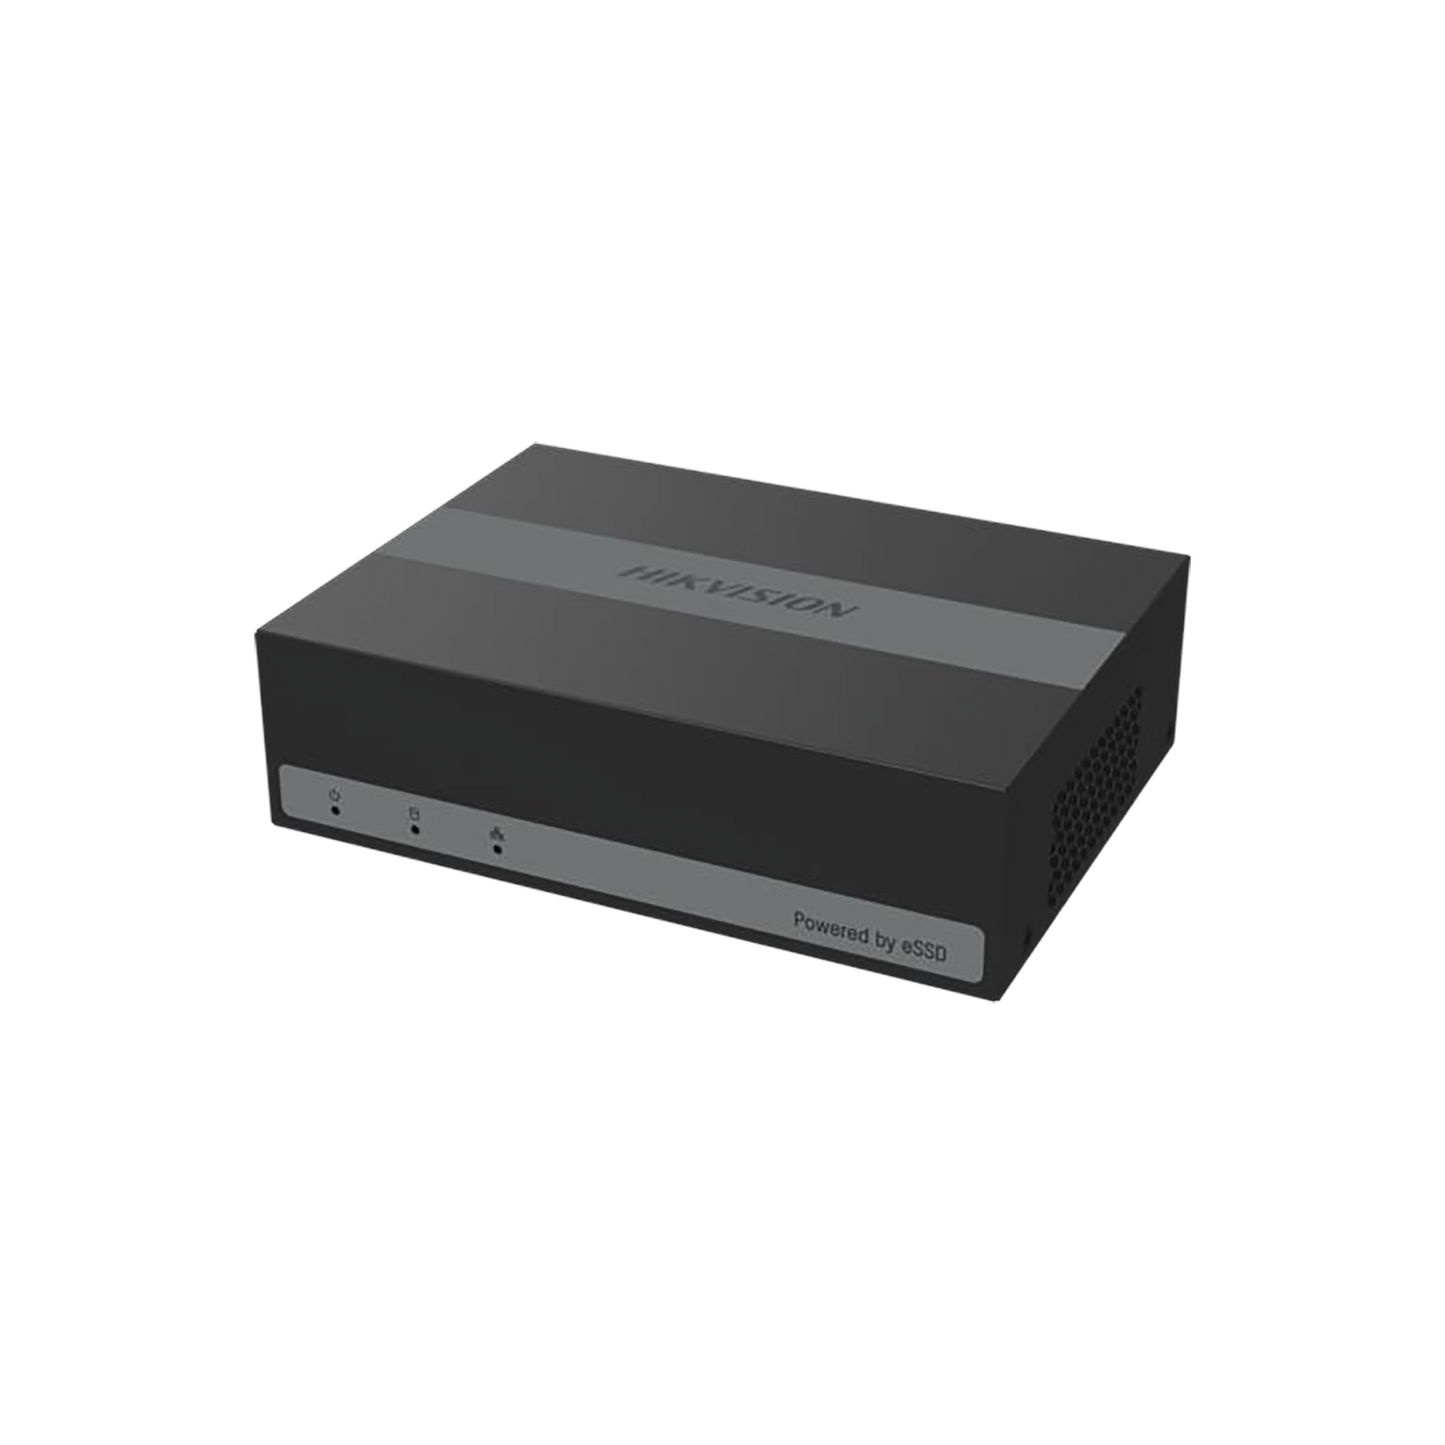 DVR 4 Megapíxel Lite/ 4 Canales TurboHD + 1 Canales IP / 15 Días de Grabación / Unidad de Estado Solido Incluido / H.265+ / Acusense Lite (Evita Falsas Alarmas)  / Diseño Ultra Compacto / Extra Silencioso / eSSD de 480 GB